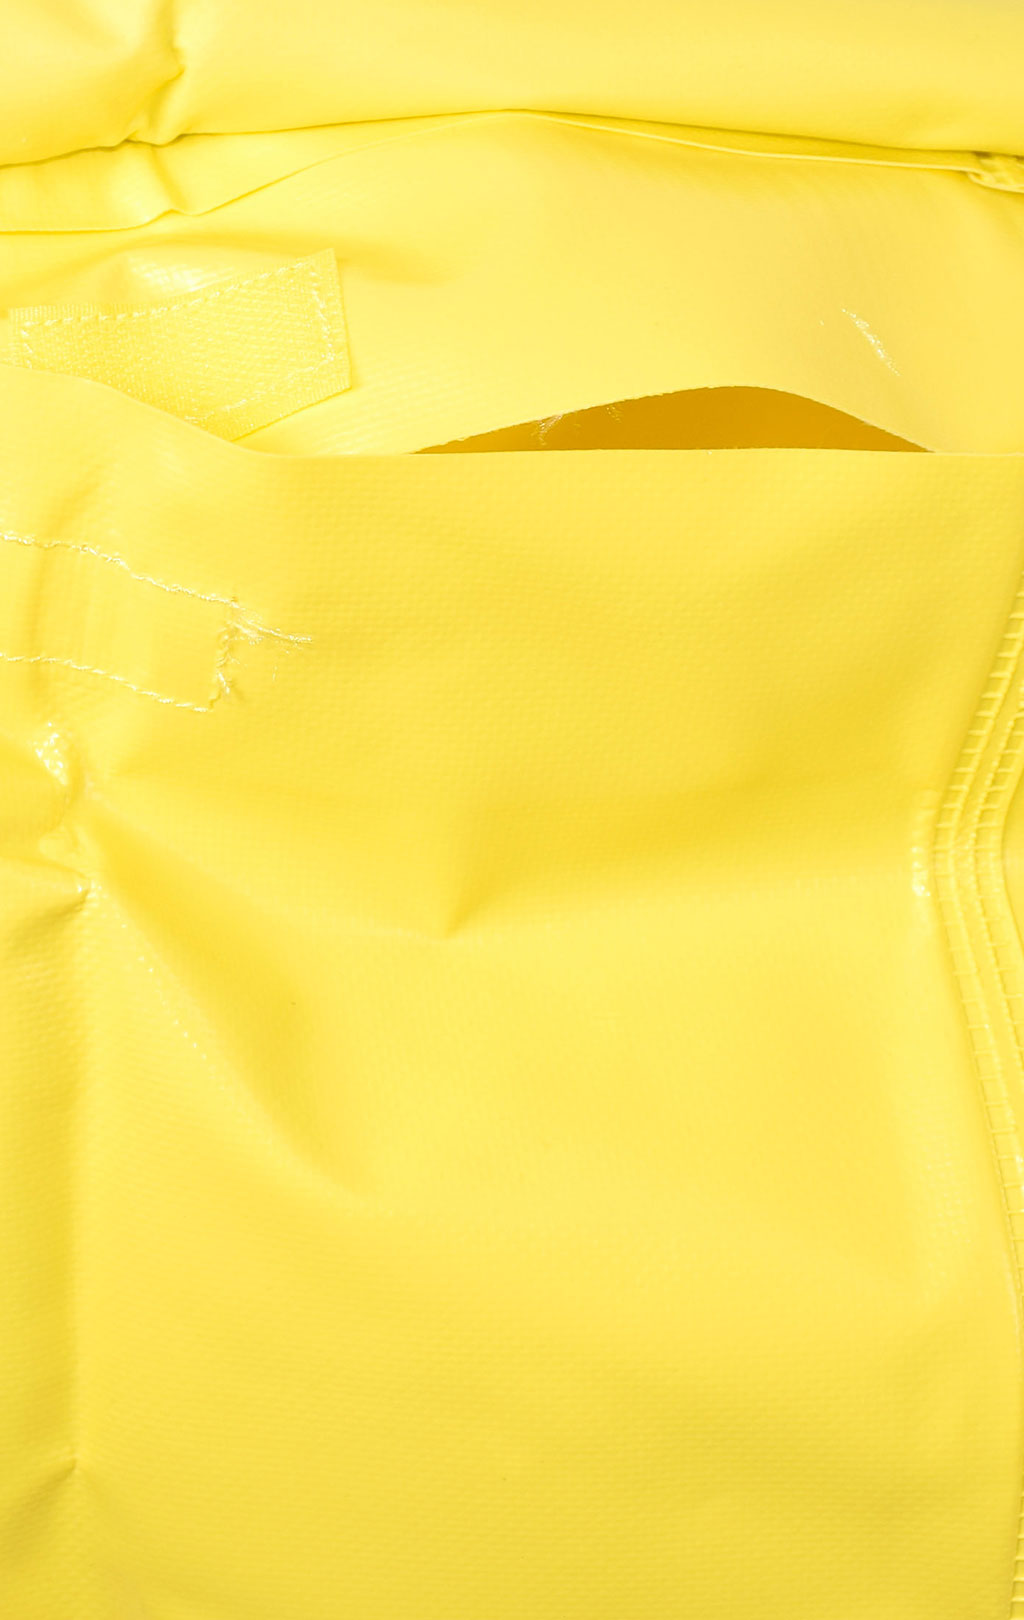 Мешок непромокаемый 50L yellow 